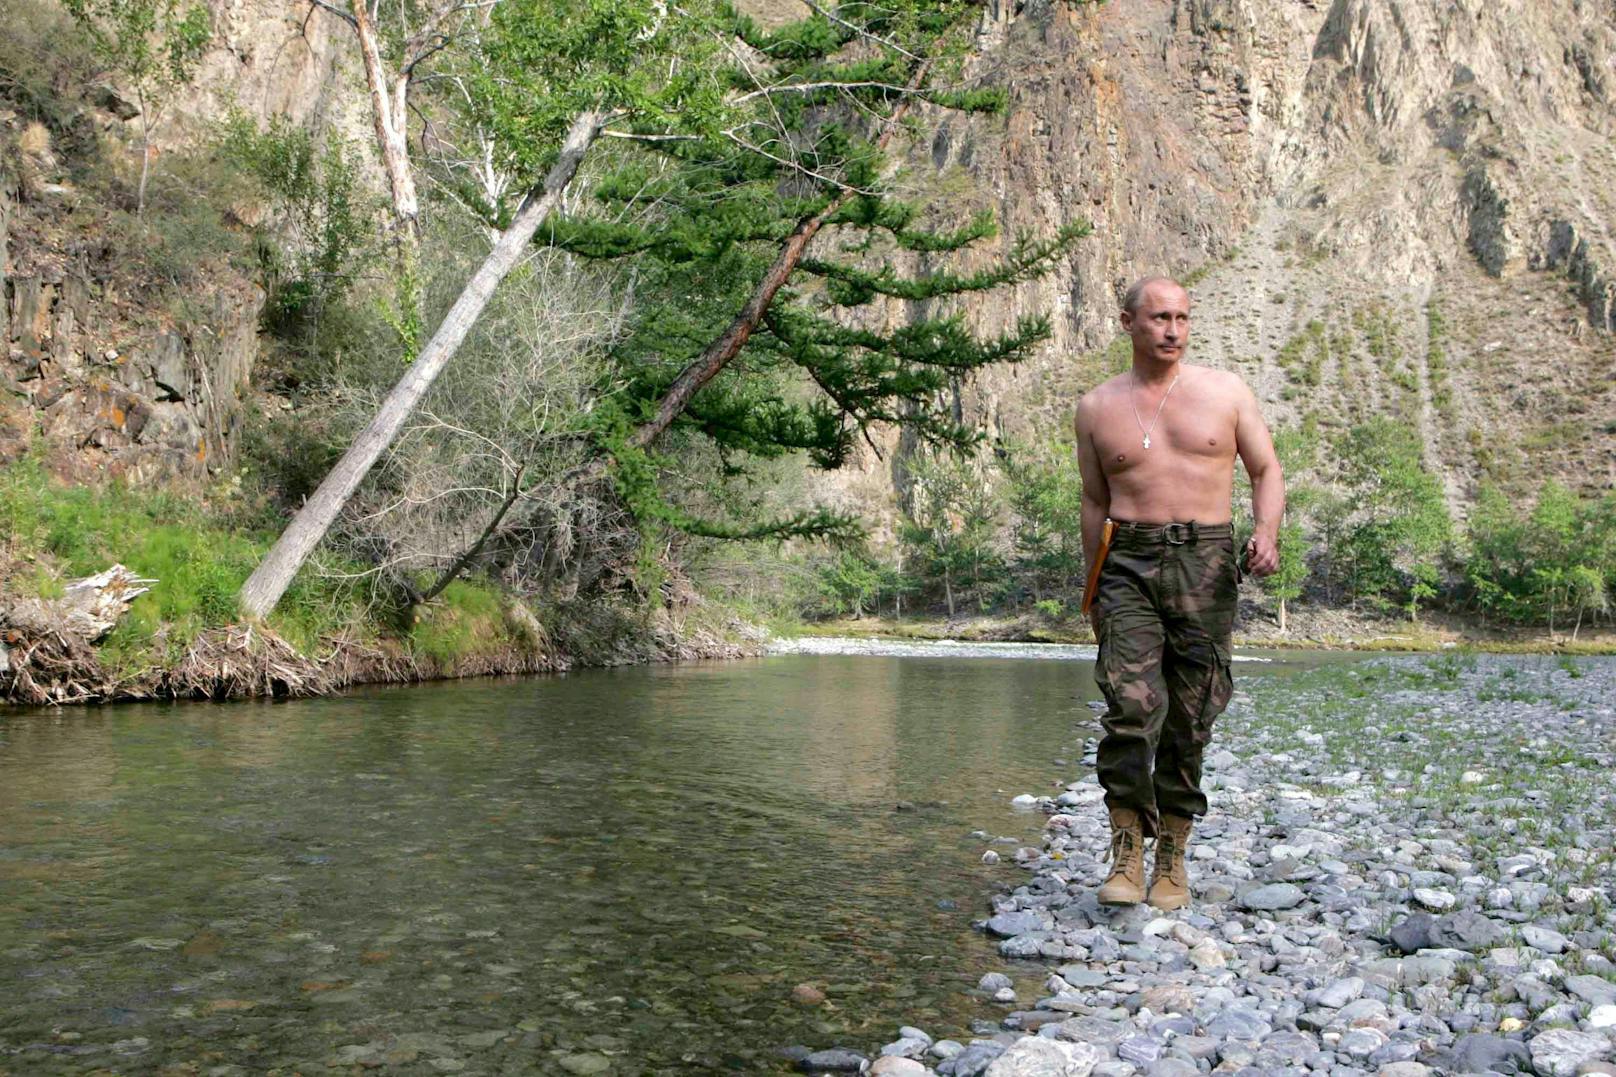 Präsident mit Vorliebe für die Natur: In der Vergangenheit zeigte sich der russische Präsident Wladimir Putin gerne in der bei Outdoor-Aktivitäten.